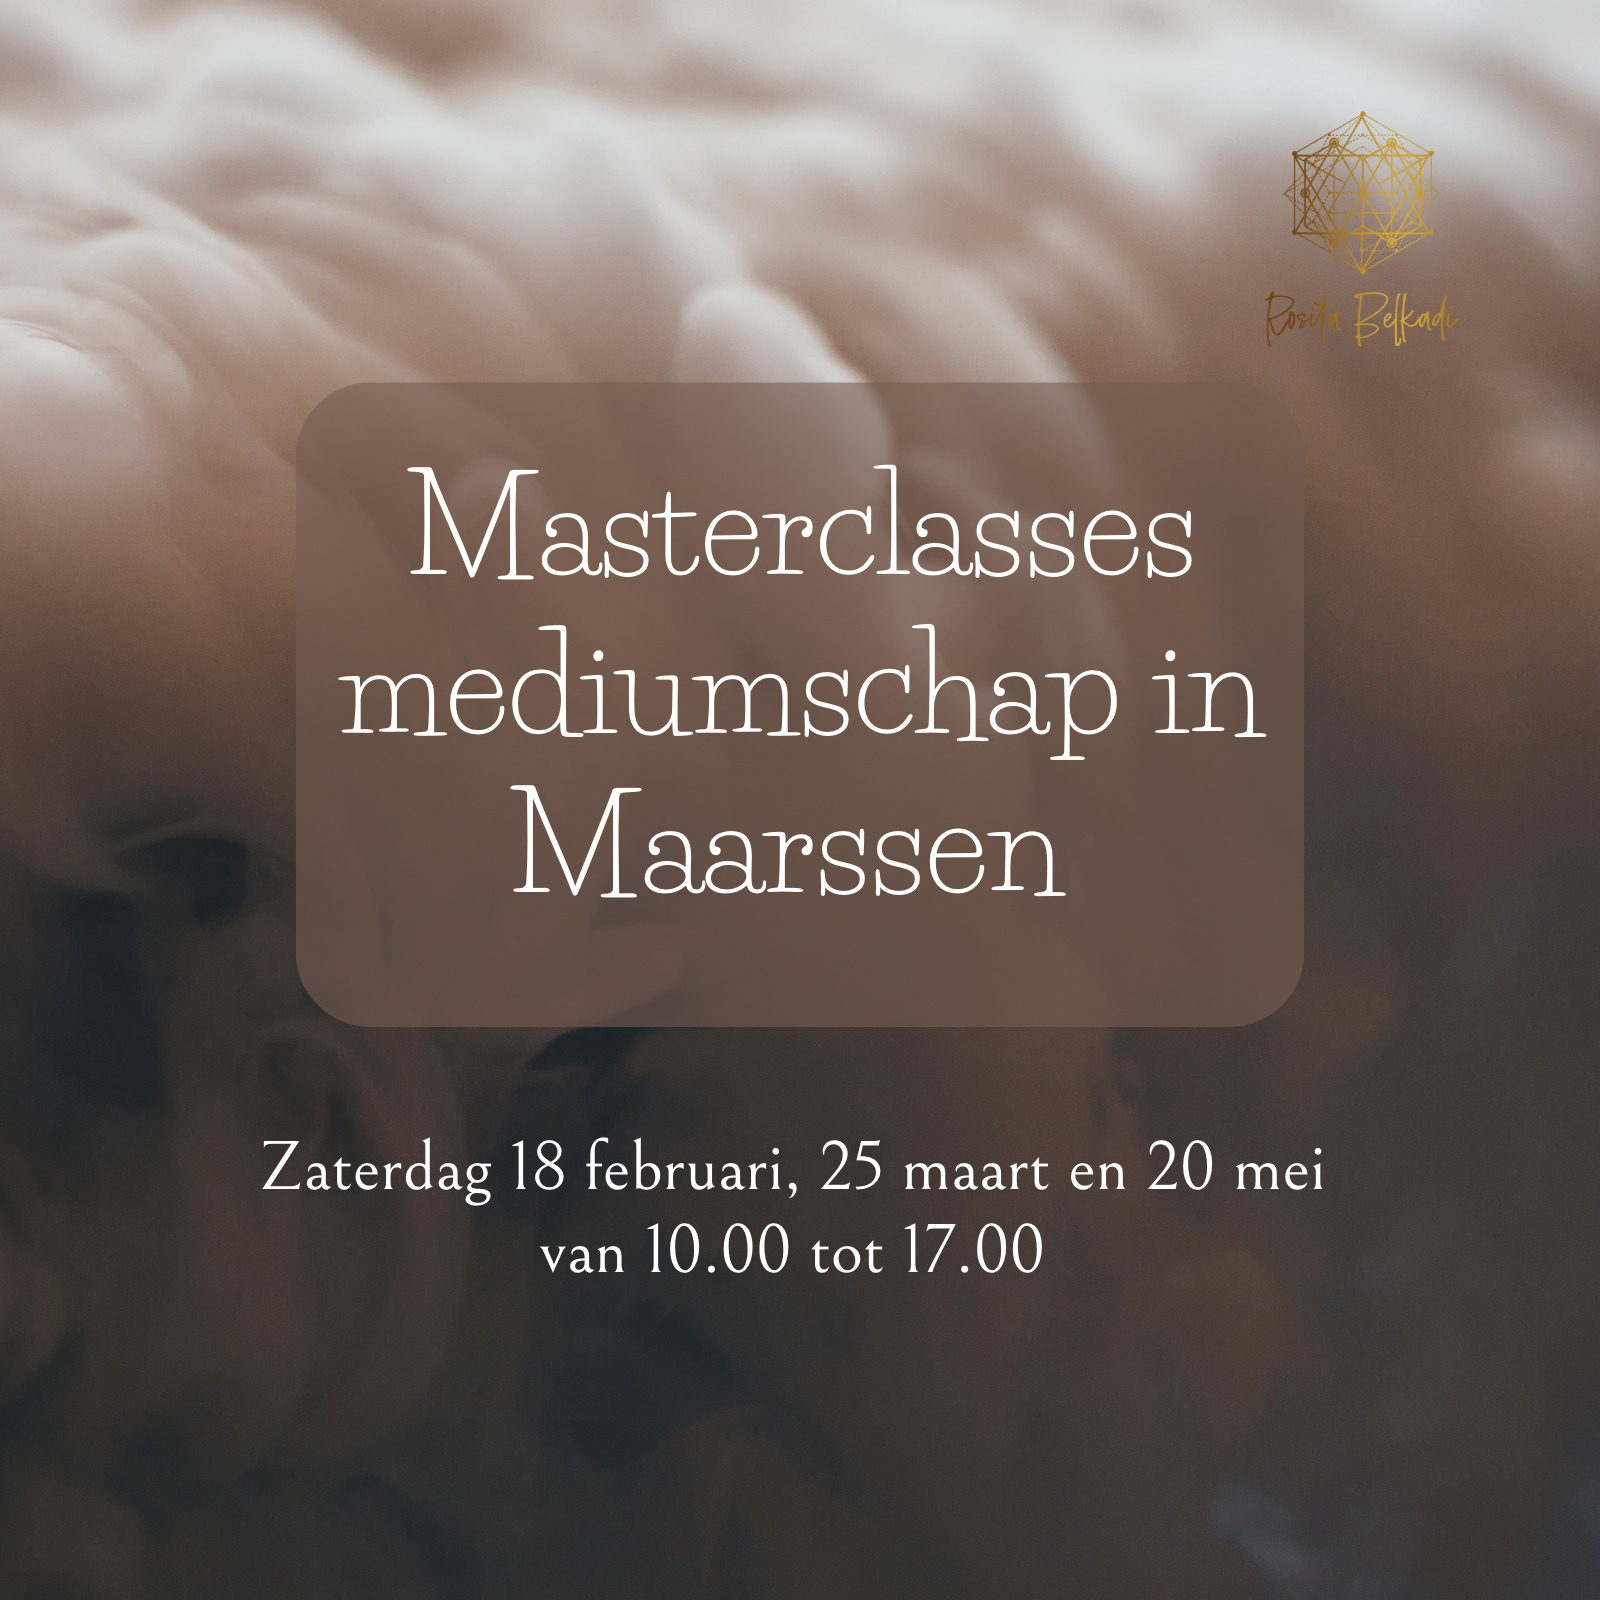 Masterclasses mediumschap in Maarssen